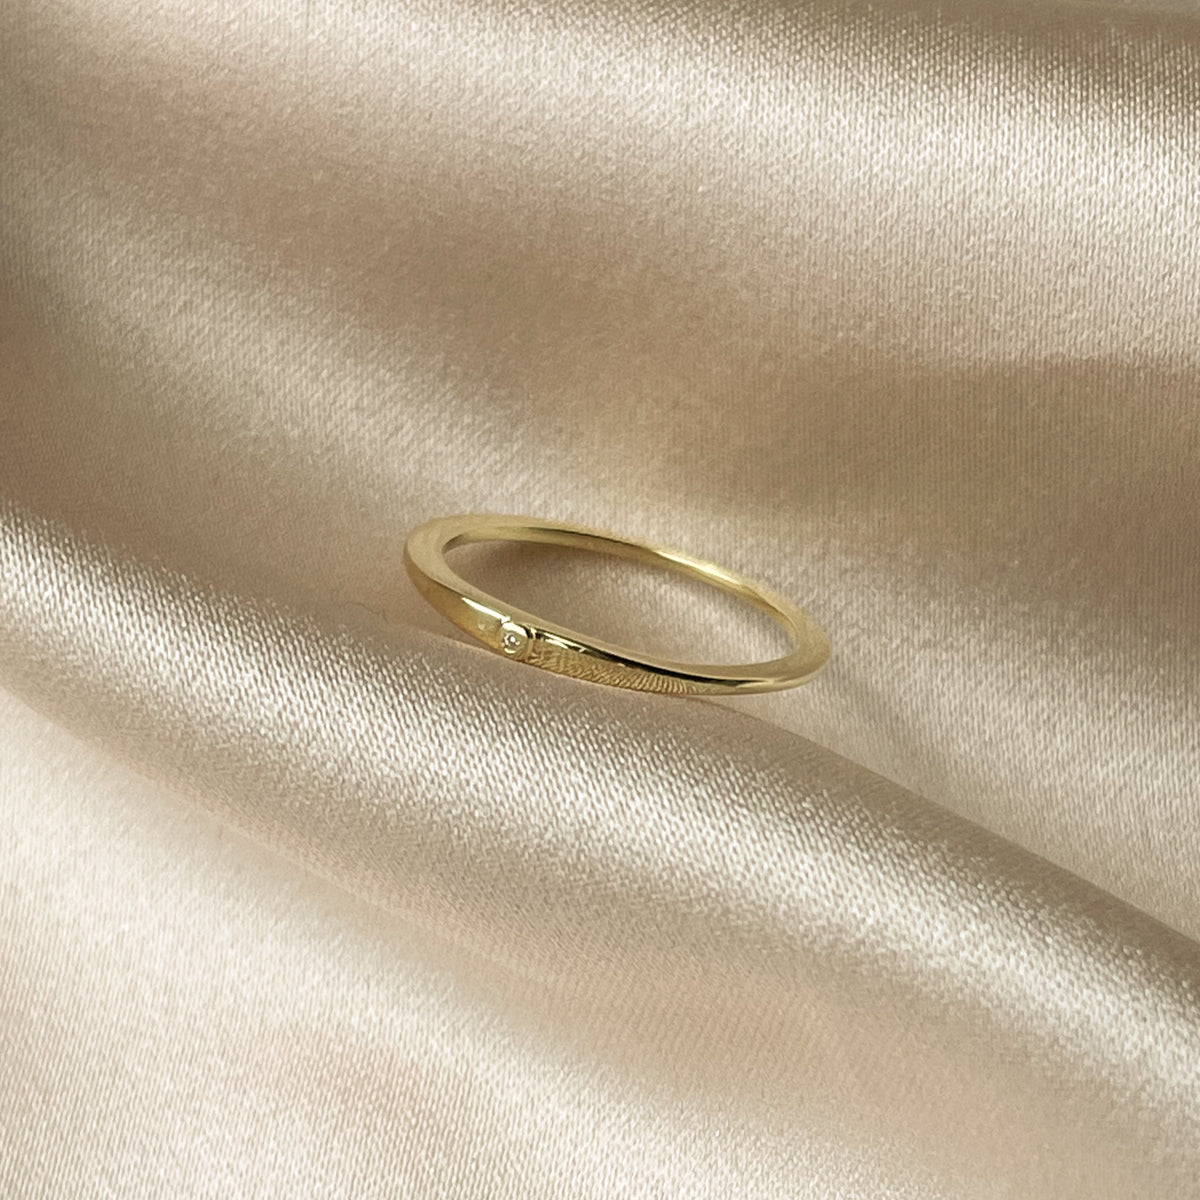 Simplistic Vermeil Ring | Gold Vermeil | Product Image | Uncommon James